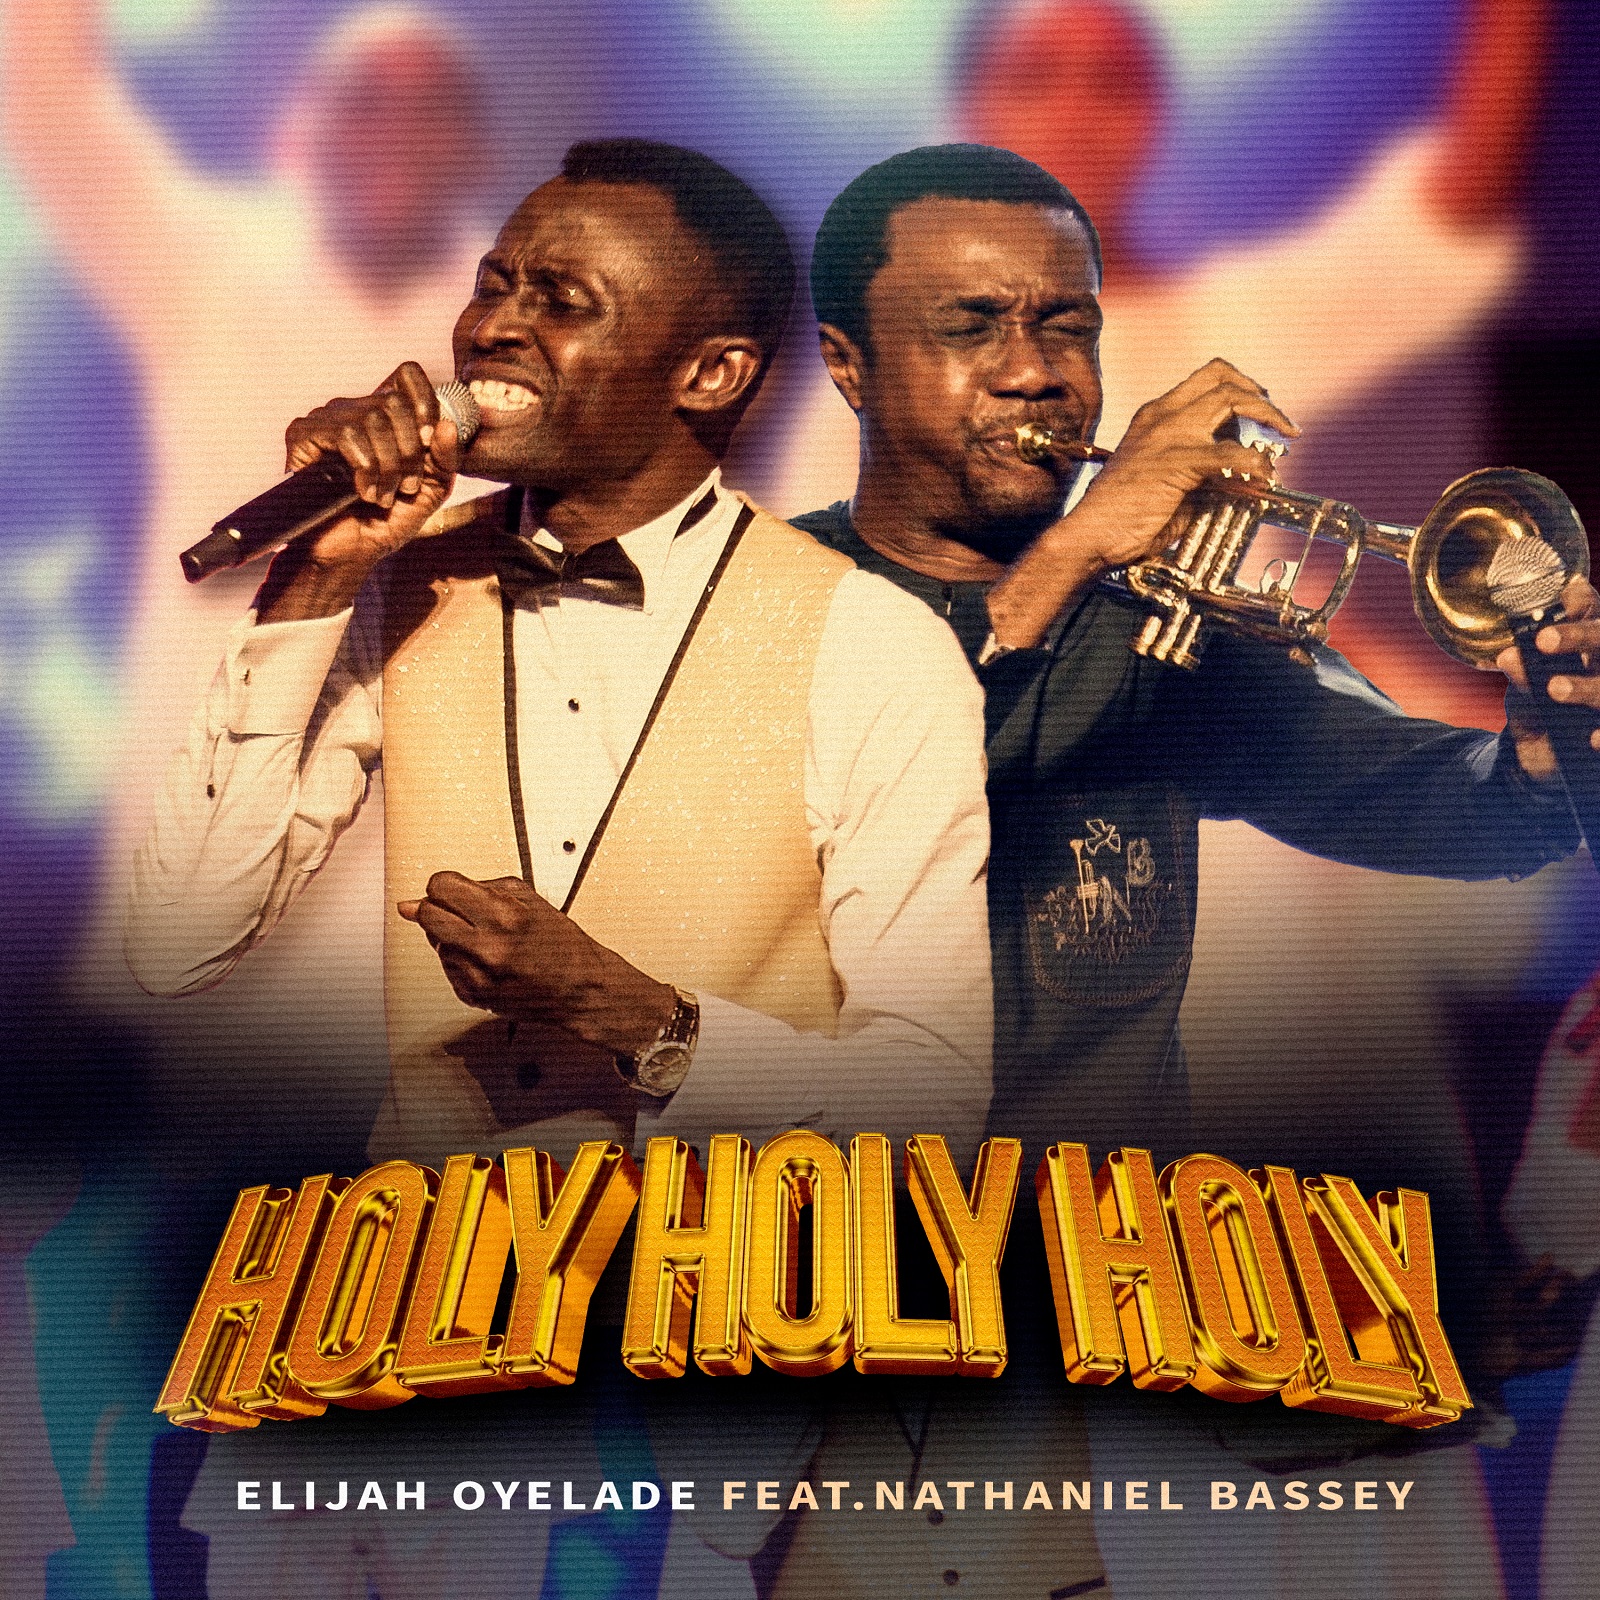 Holy Holy Holy by Elijah Oyelade Ft. Nathaniel Bassey